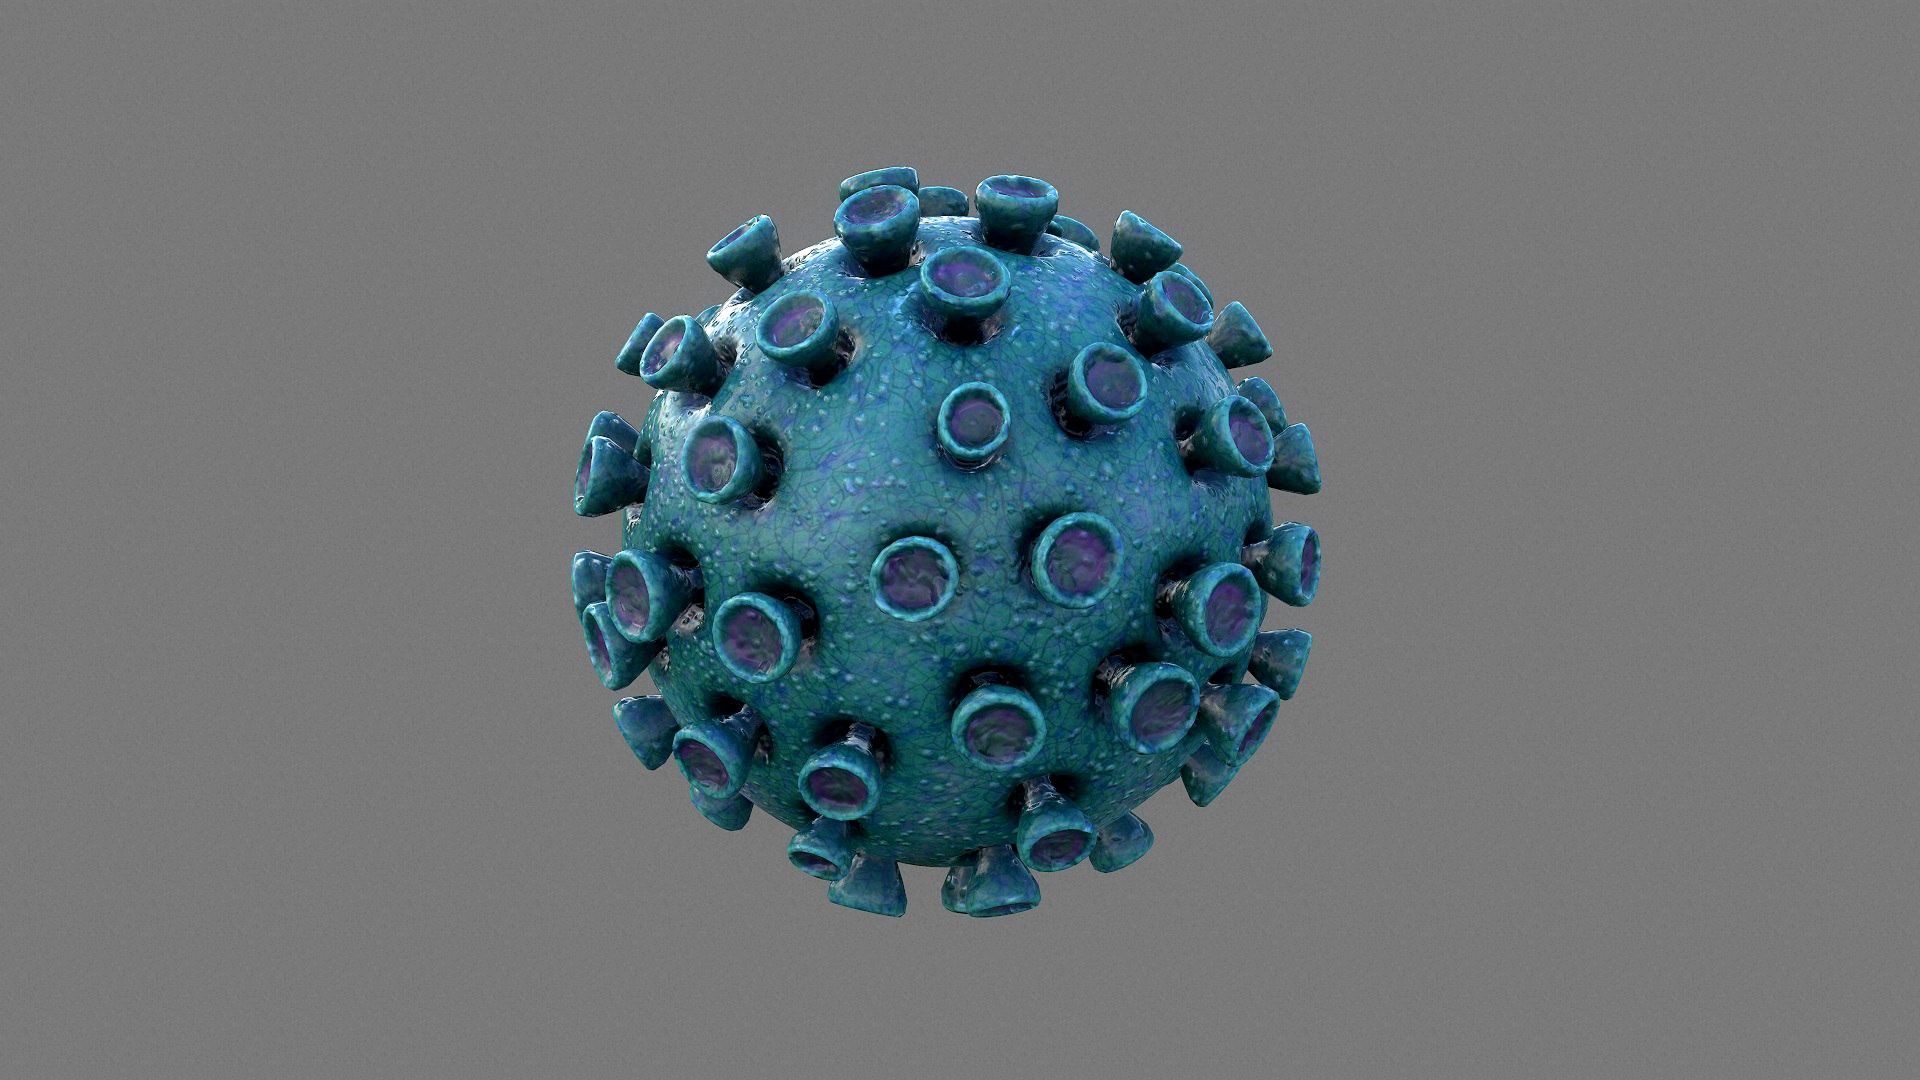 Virus 03